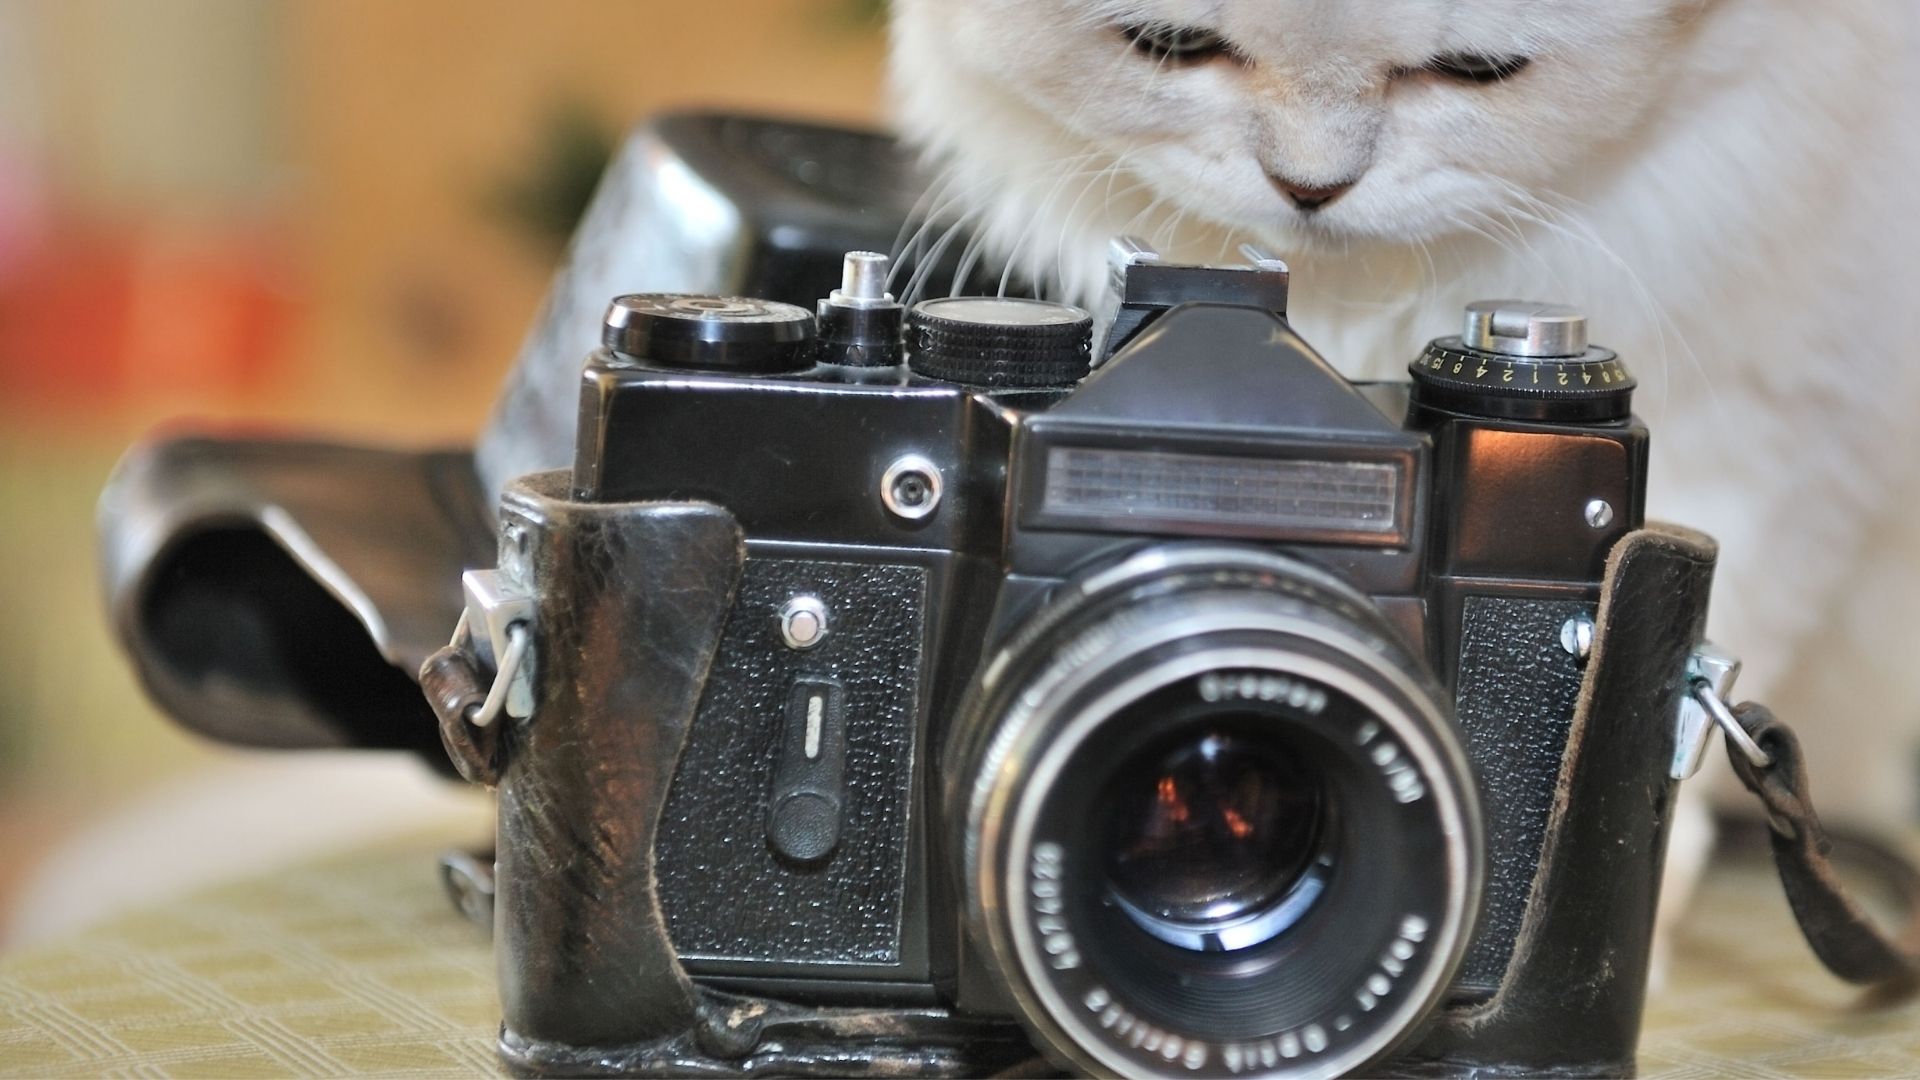 Kocia sesja zdjęciowa: jak zrobić kotu idealne zdjęcie? – rozmowa z kocią fotografką Moniką Knapik